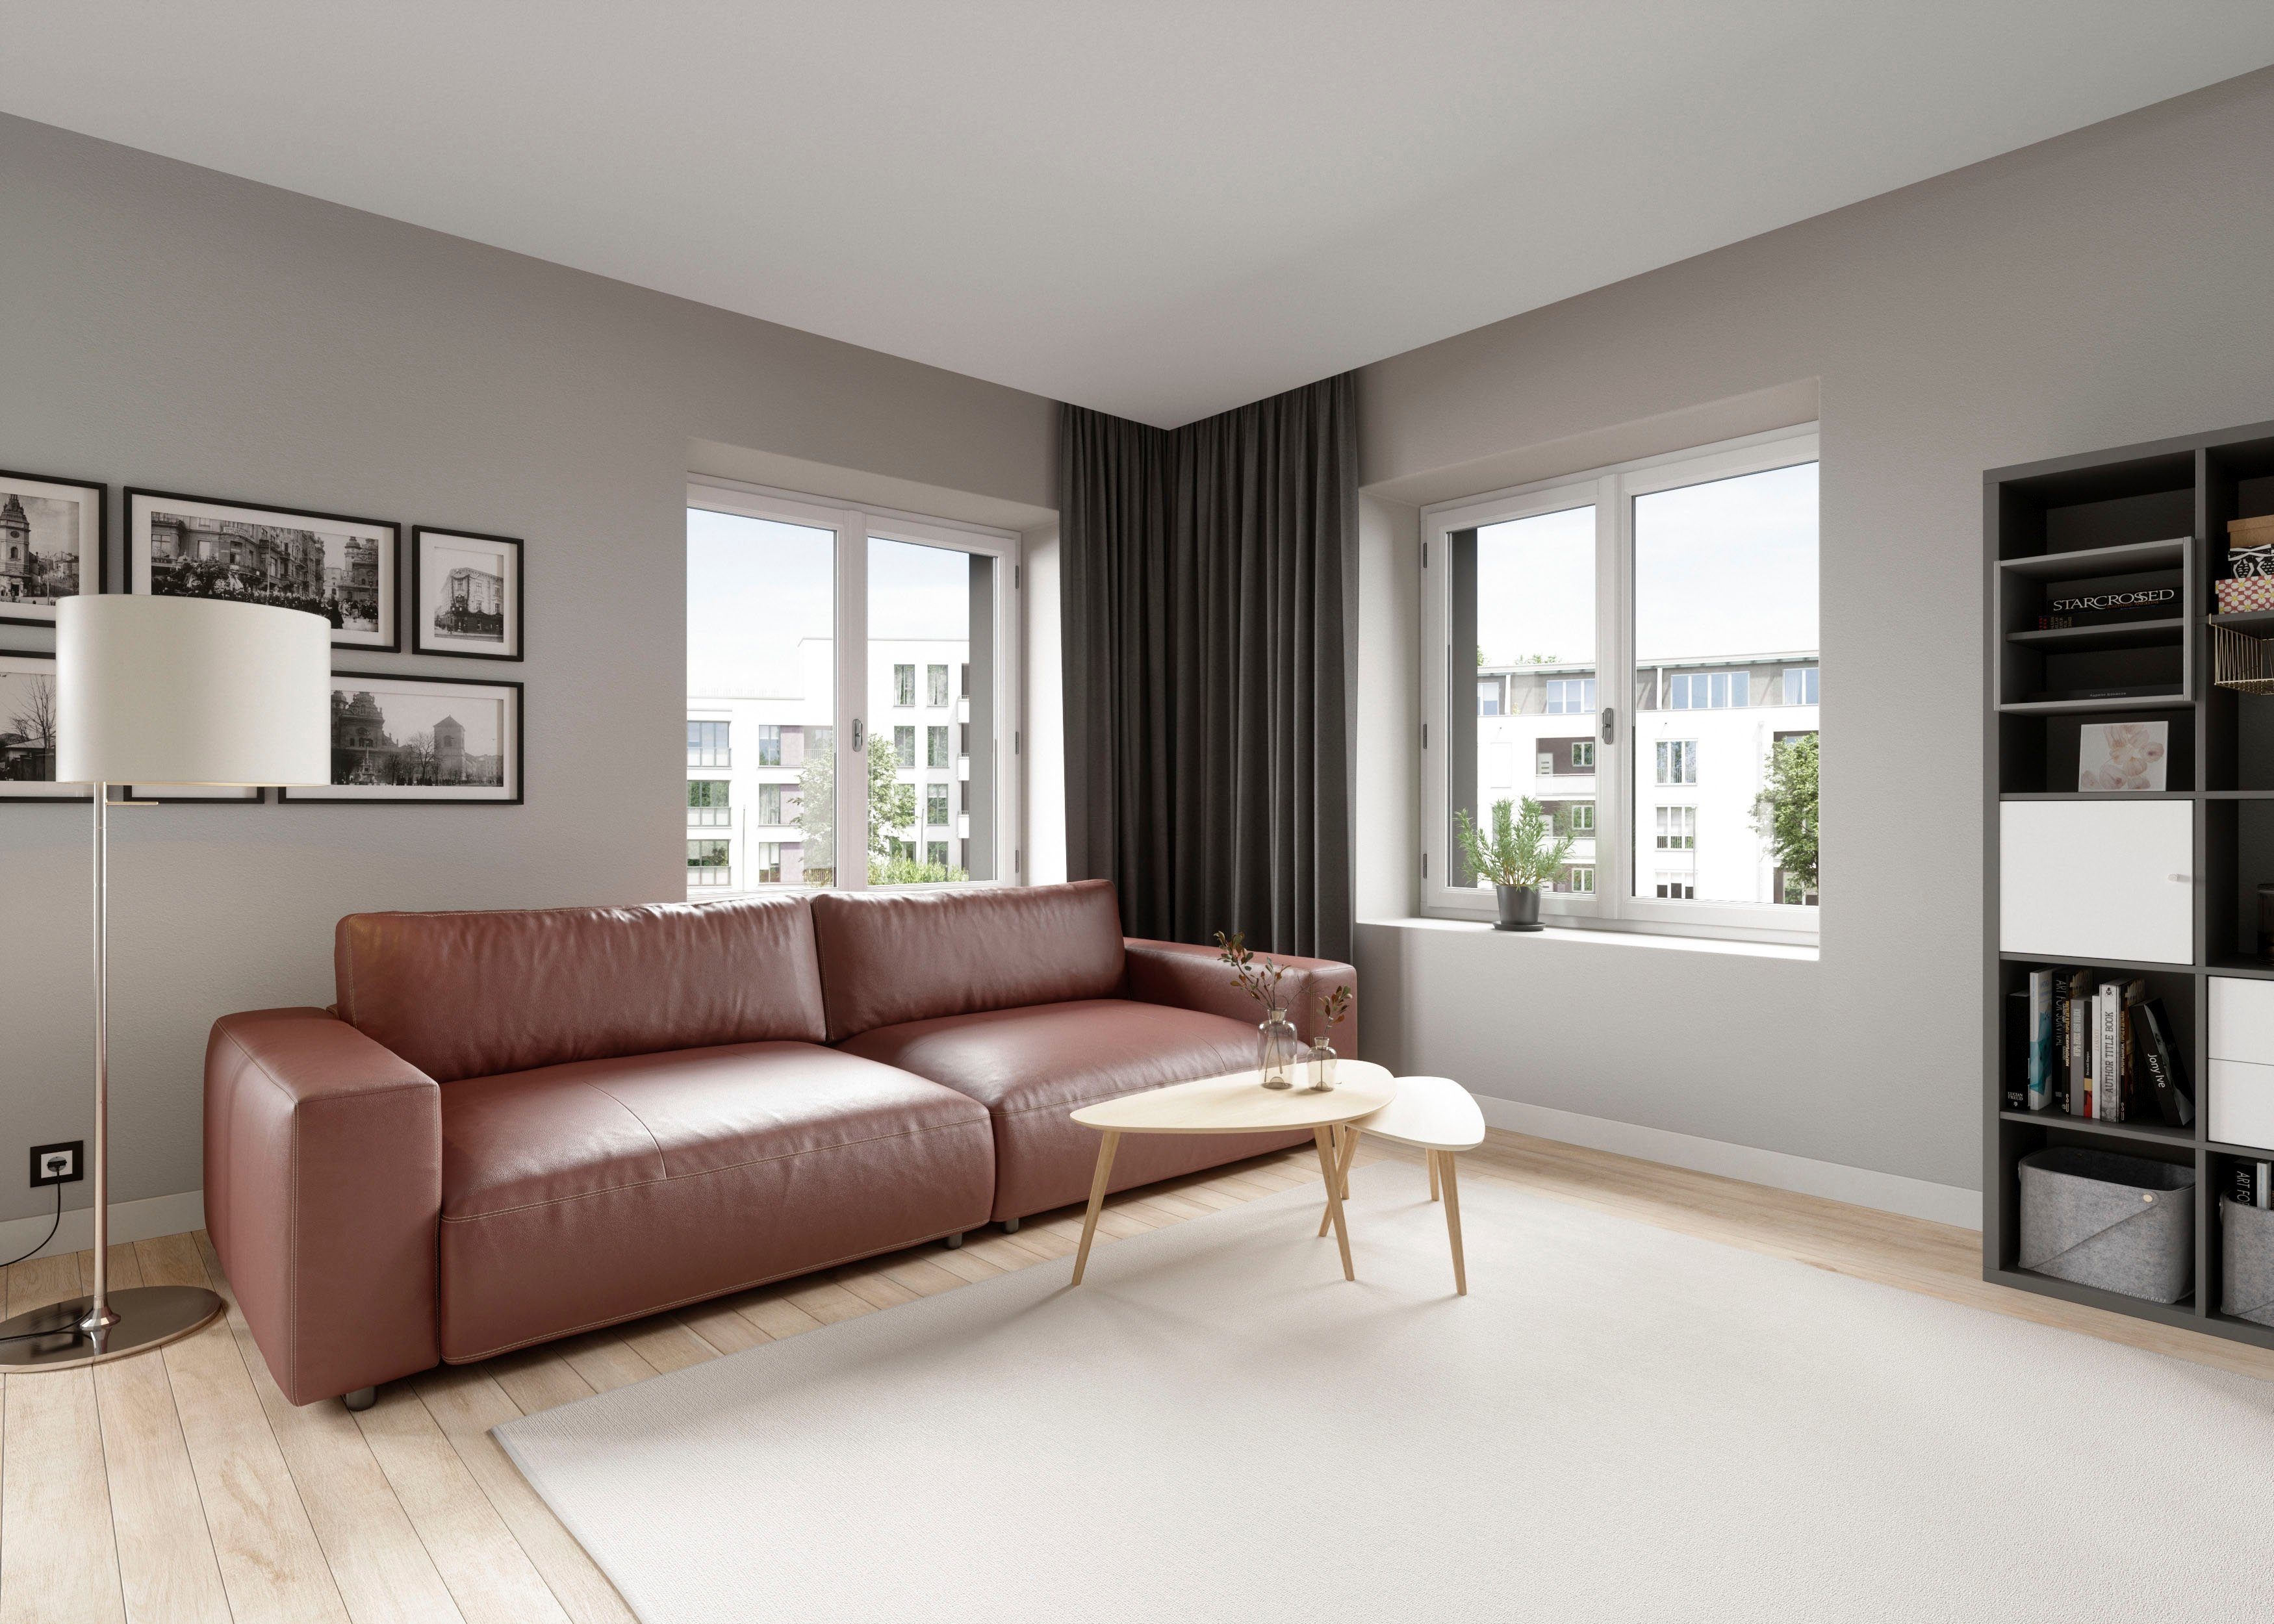 Qualitäten branded by GALLERY in Nähten, LUCIA, vielen Musterring Big-Sofa und M 2,5-Sitzer 4 unterschiedlichen